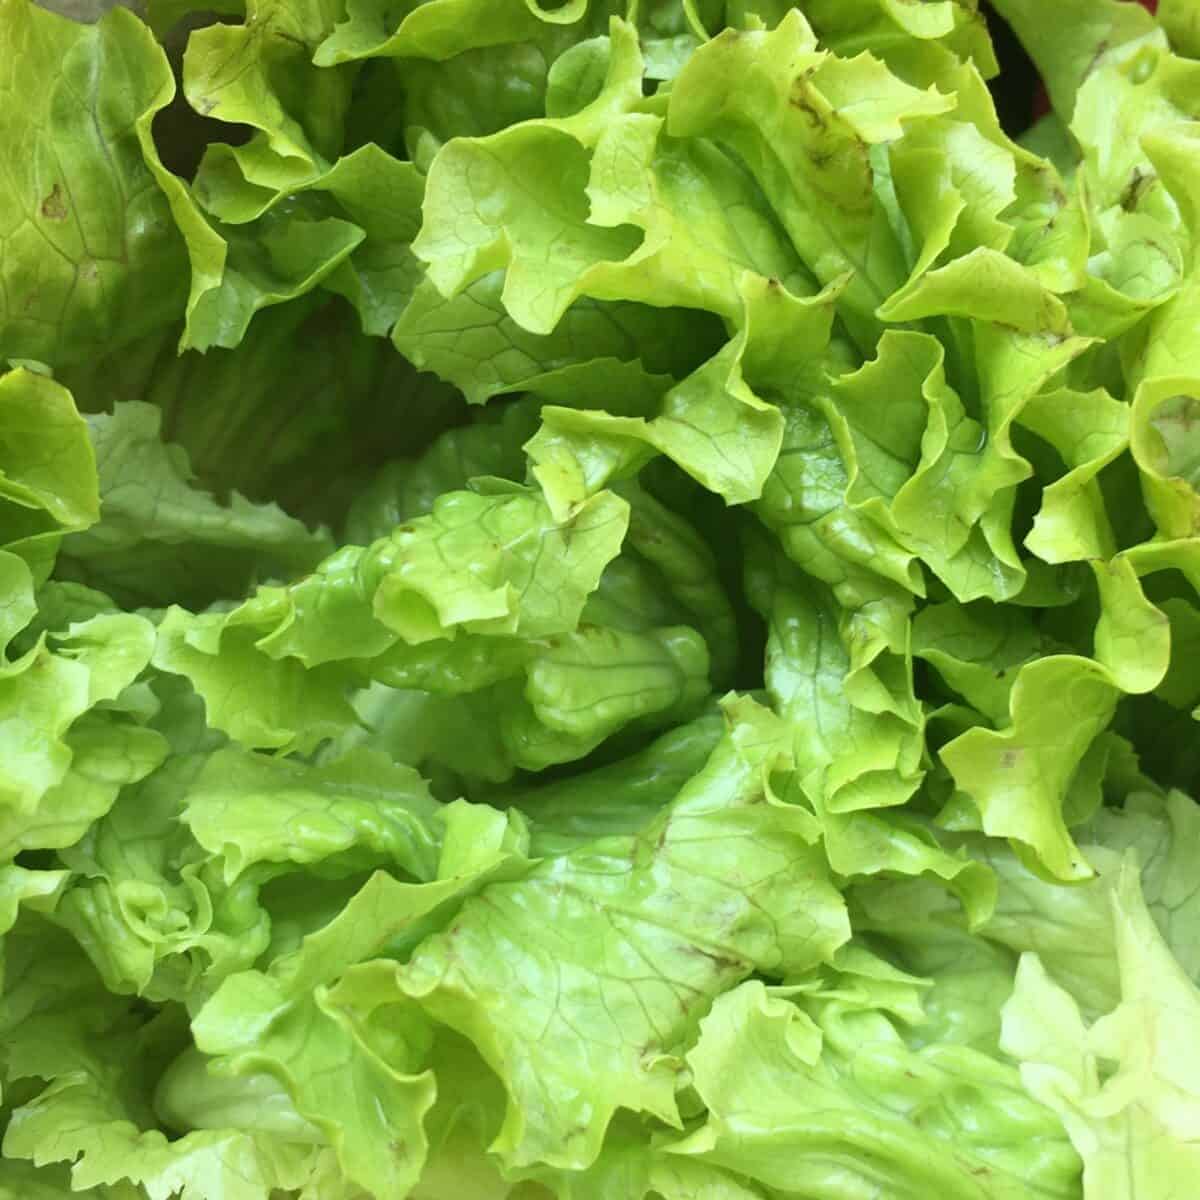 bright green fresh lettuce leaves